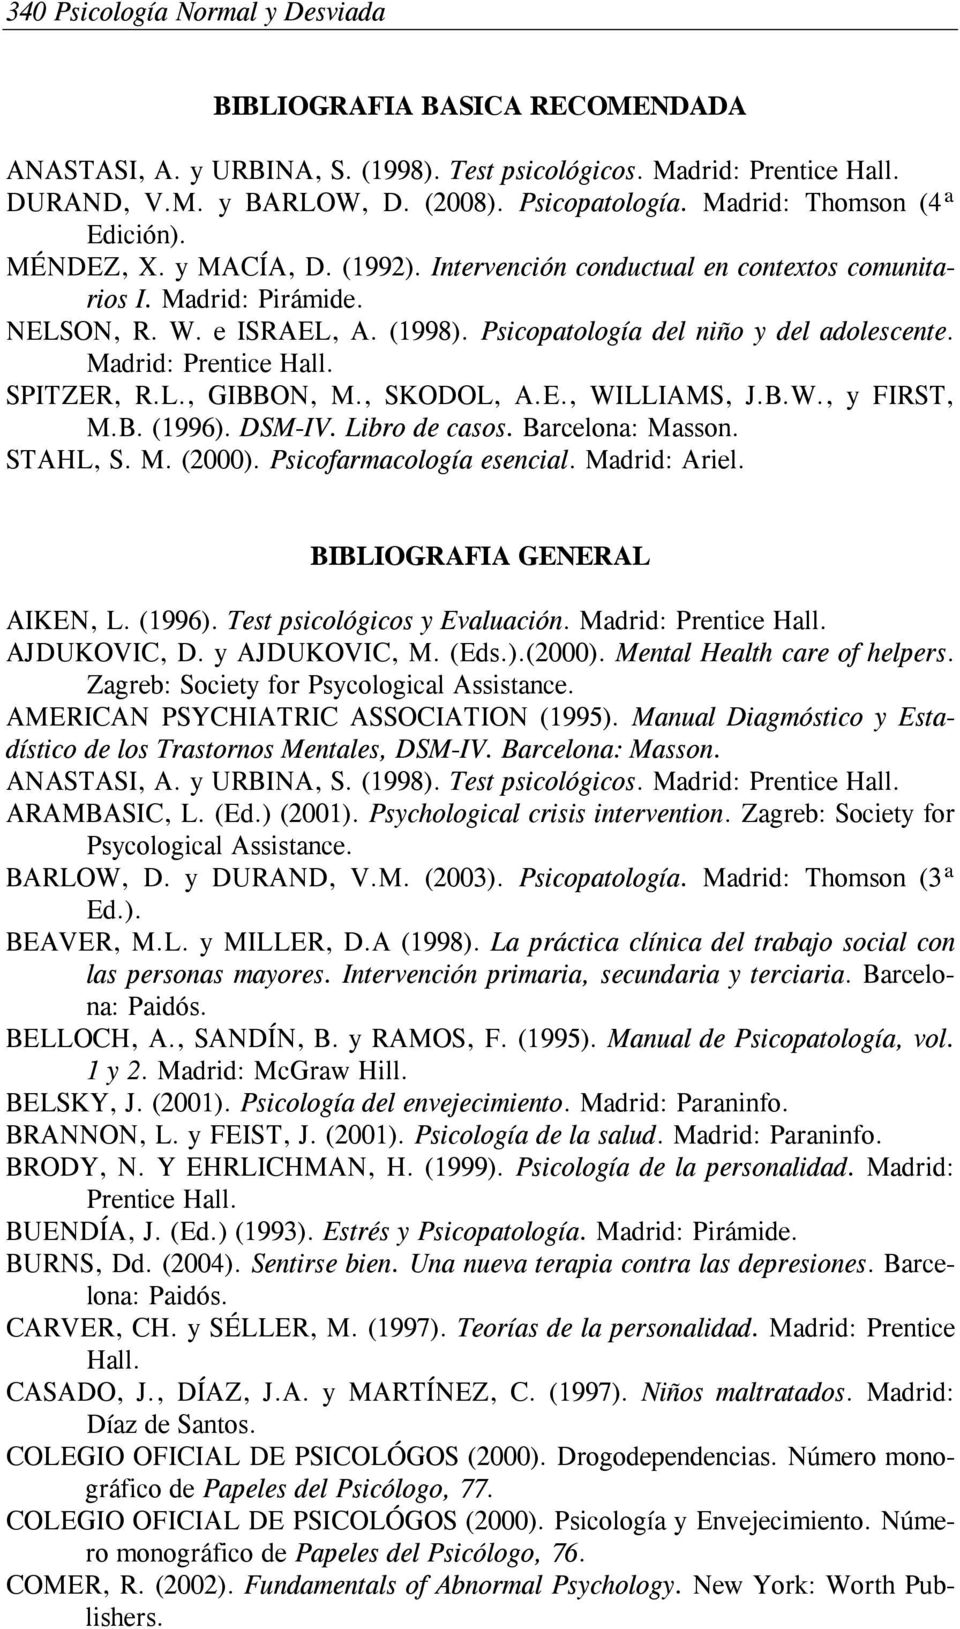 SPITZER, R.L., GIBBON, M., SKODOL, A.E., WILLIAMS, J.B.W., y FIRST, M.B. (1996). DSM-IV. Libro de casos. Barcelona: Masson. STAHL, S. M. (2000). Psicofarmacología esencial. Madrid: Ariel.